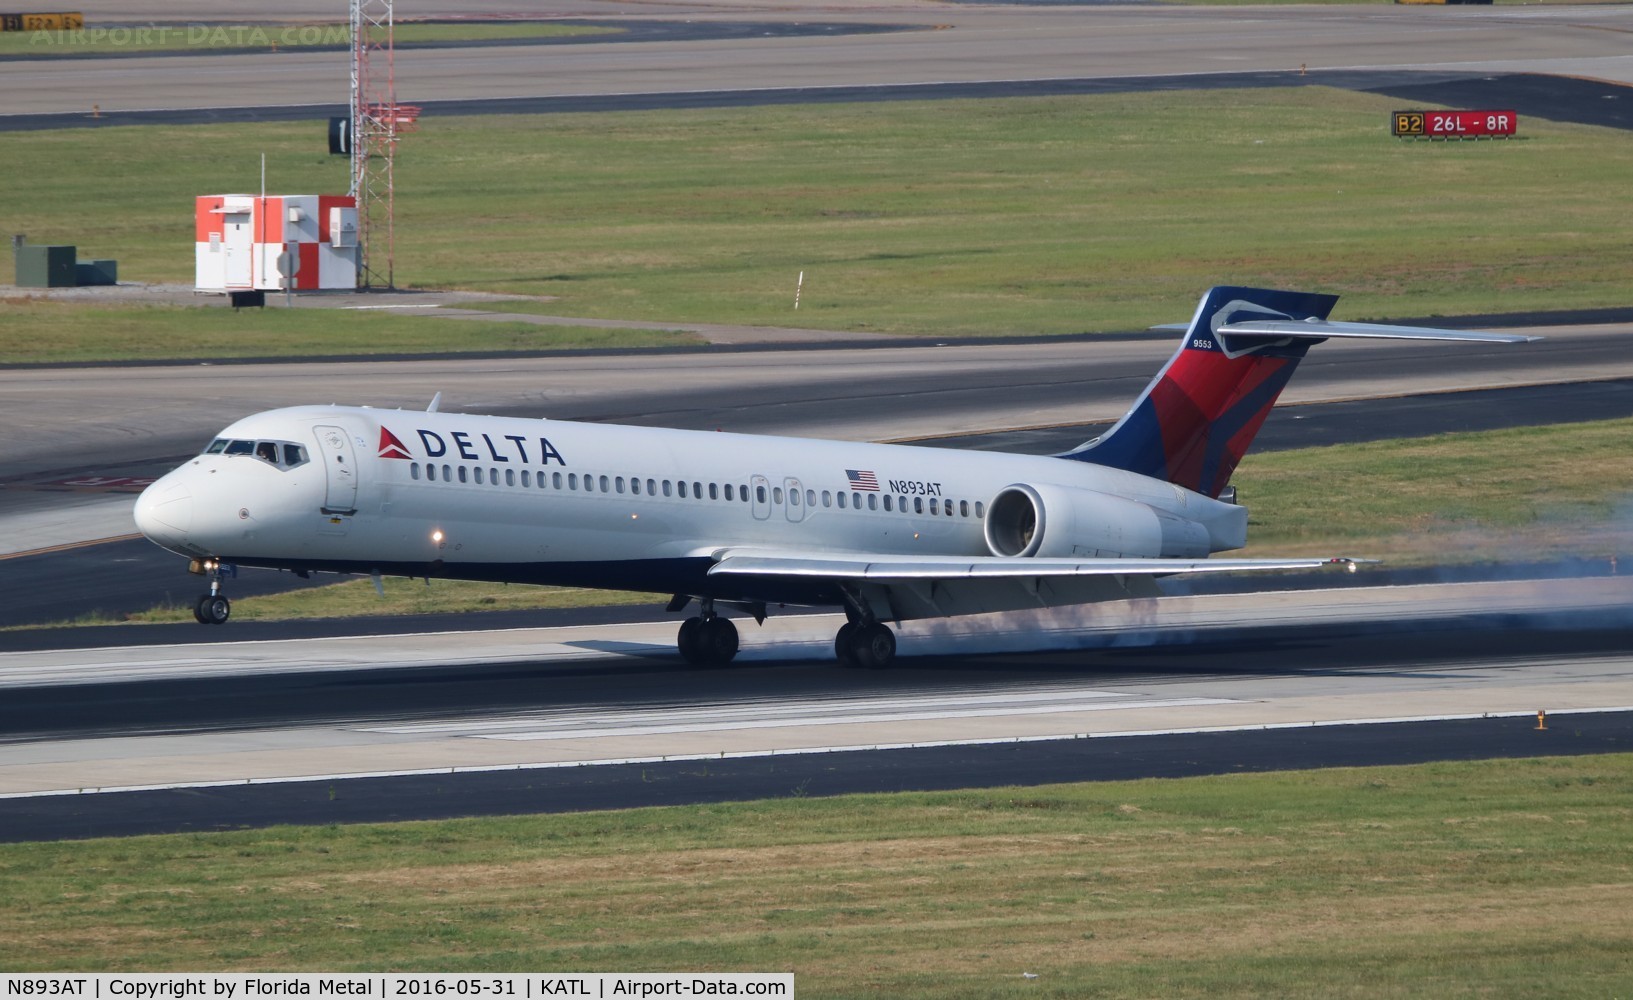 N893AT, 2004 Boeing 717-200 C/N 55045, Delta 717